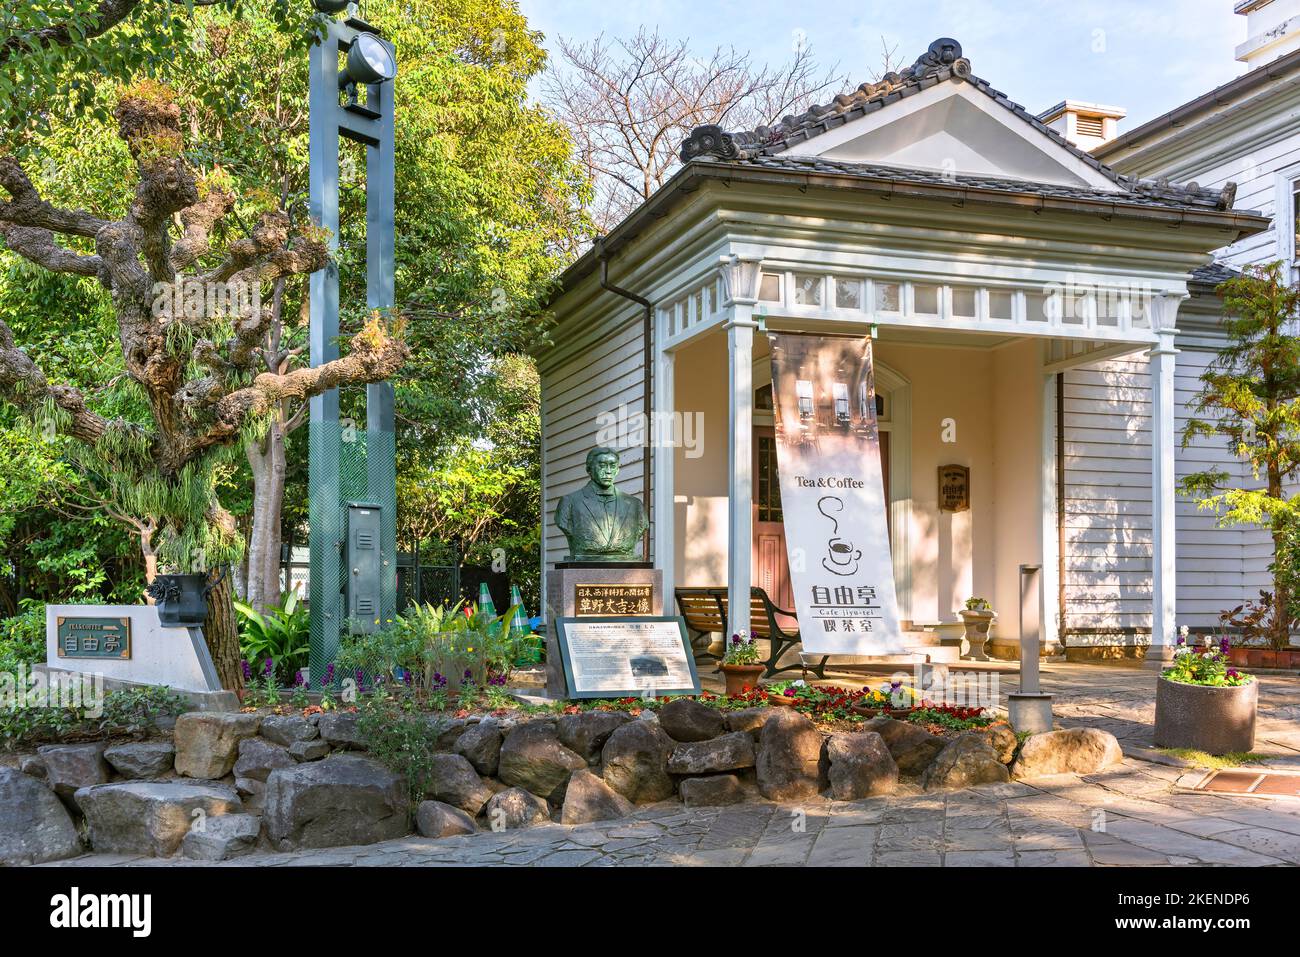 nagasaki, kyushu - dicembre 13 2021: JIYU-tei Cafe e Teahhouse che mescolano architettura giapponese ed europea nel Giardino del Glover a parte un busto di chef Jokichi Foto Stock